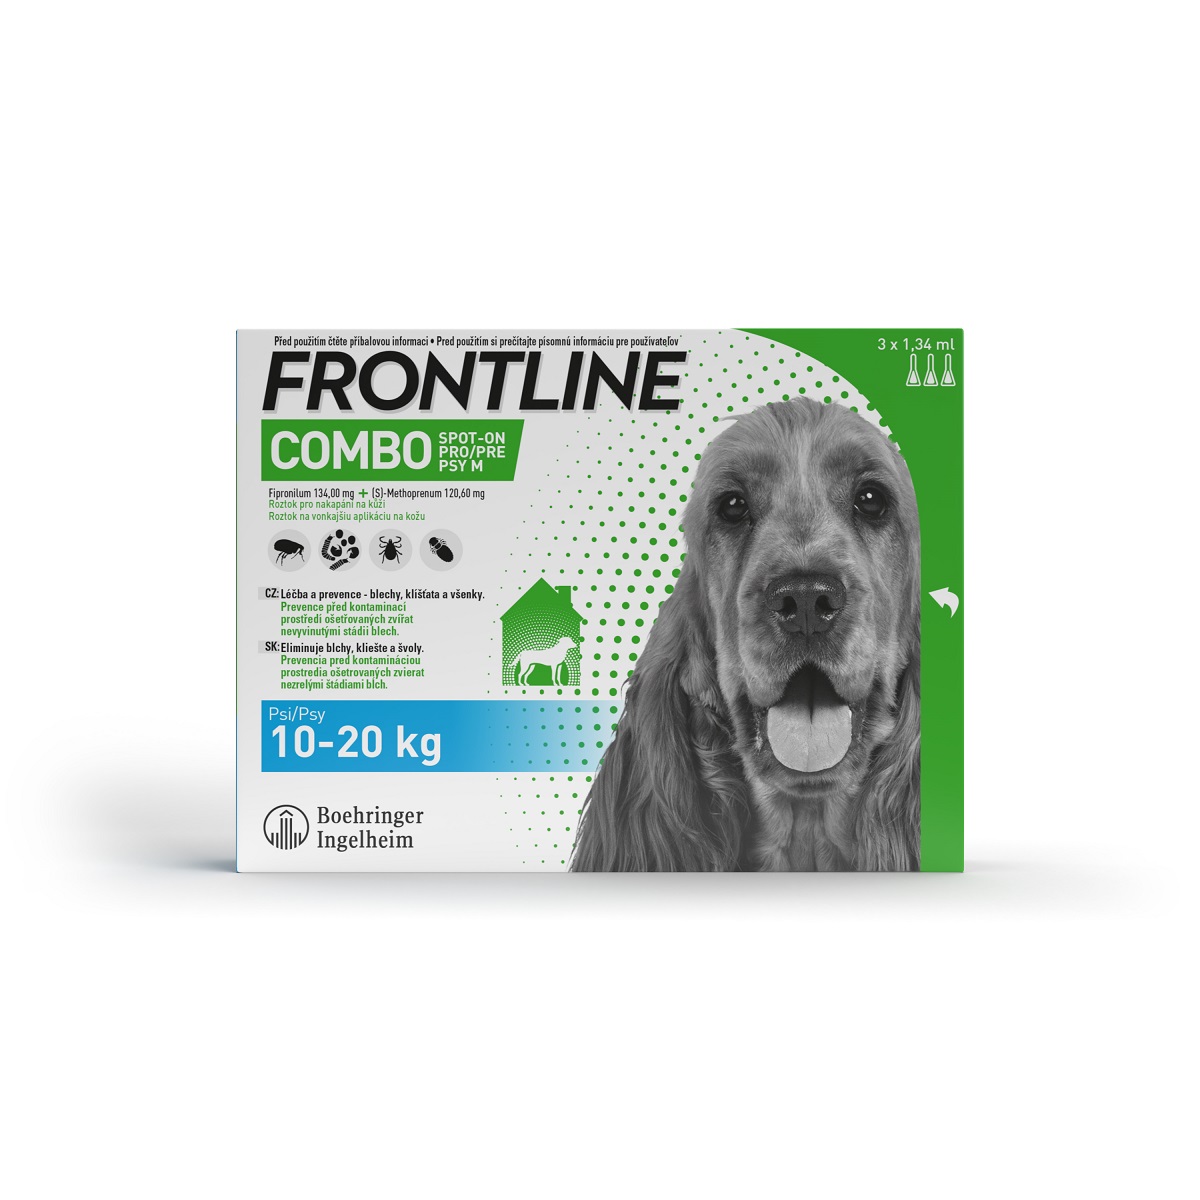 FRONTLINE Combo Spot-On Dog M 3x1,34ml 10-20kg